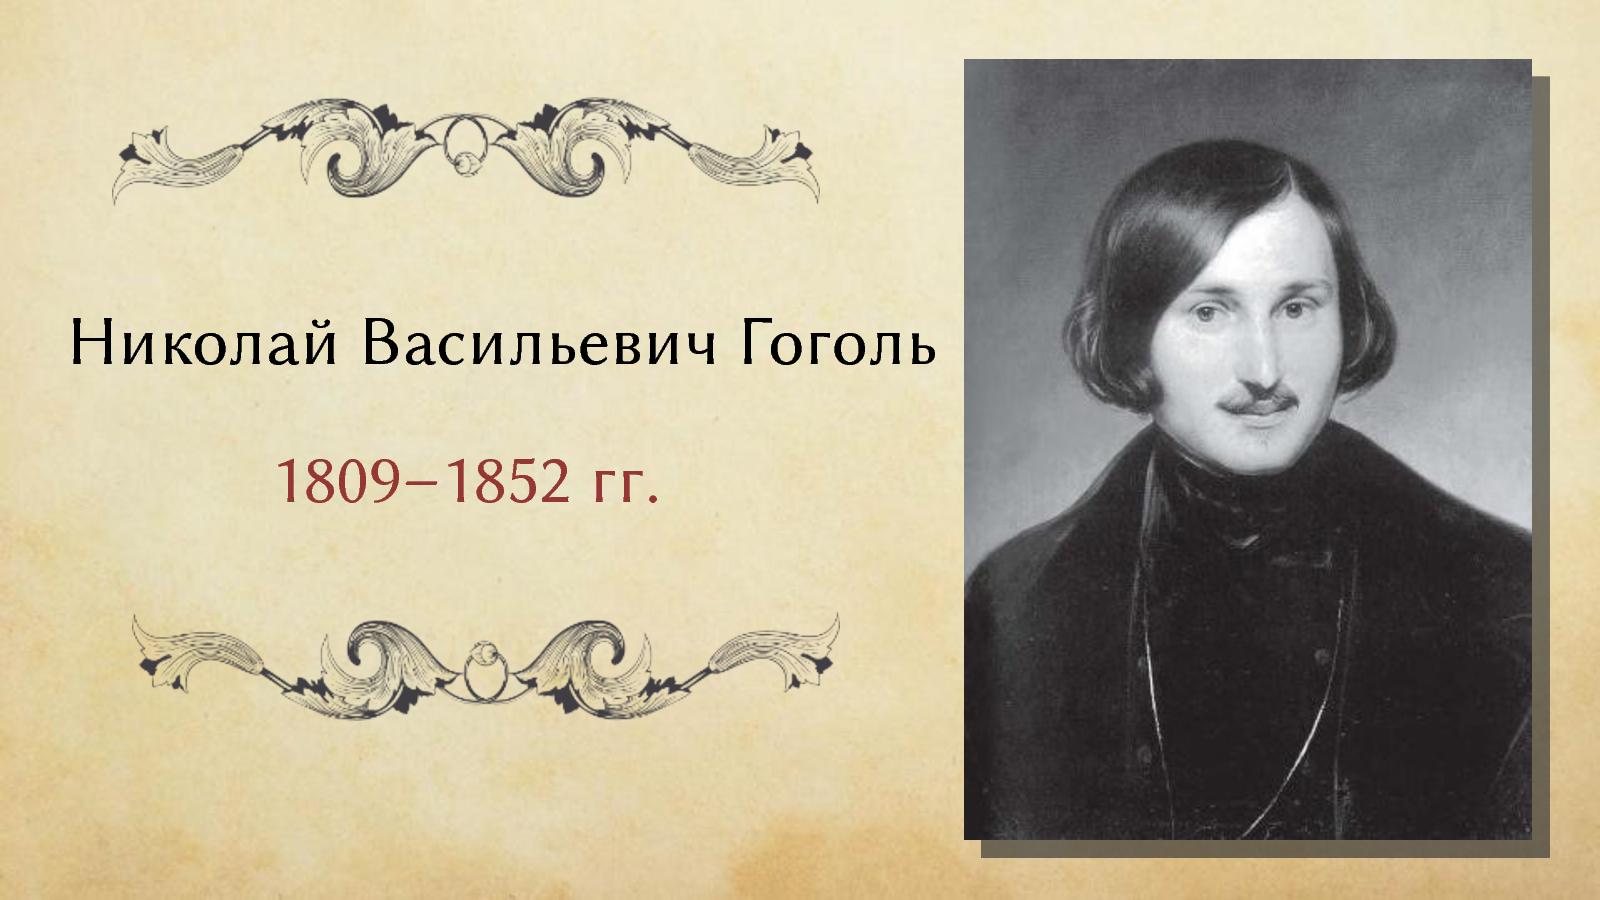 Назовите фамилию николая васильевича при рождении. Гоголь годы жизни.